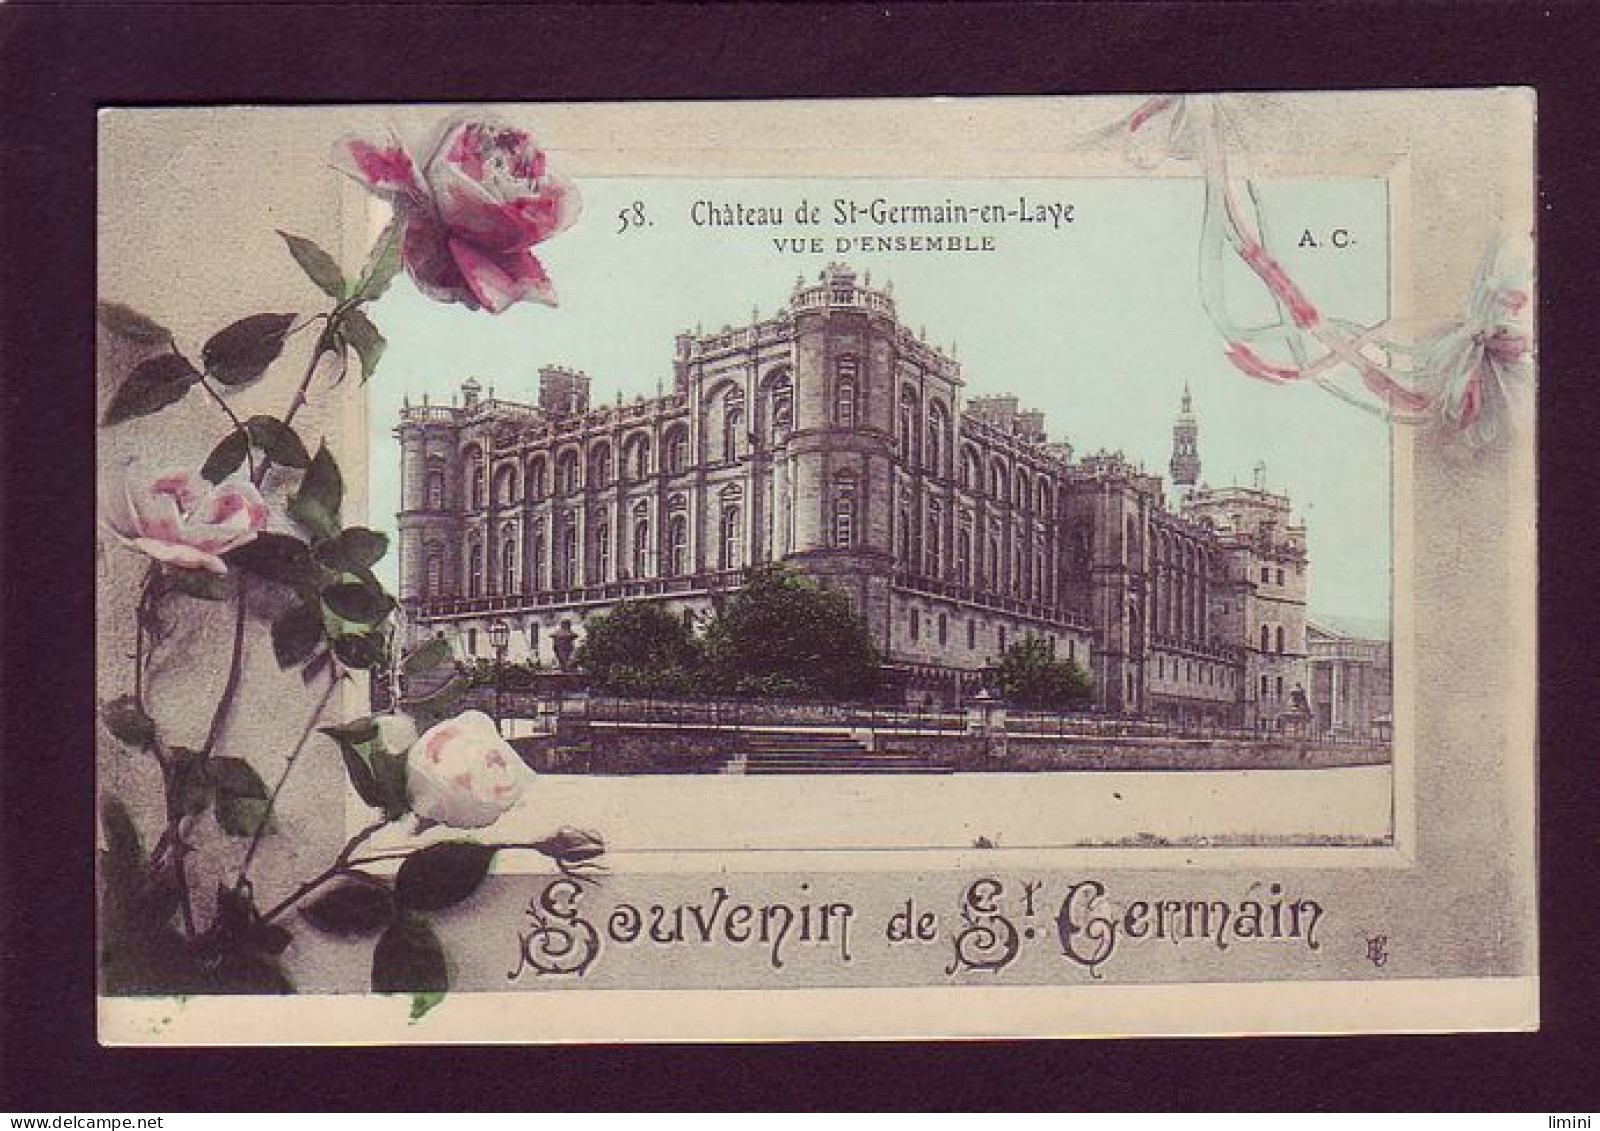 78 - SAINT-GERMAIN-en-LAYE - FLEURS - CARTE ILLUSTRÉE - SOUVENIR -  - St. Germain En Laye (Château)